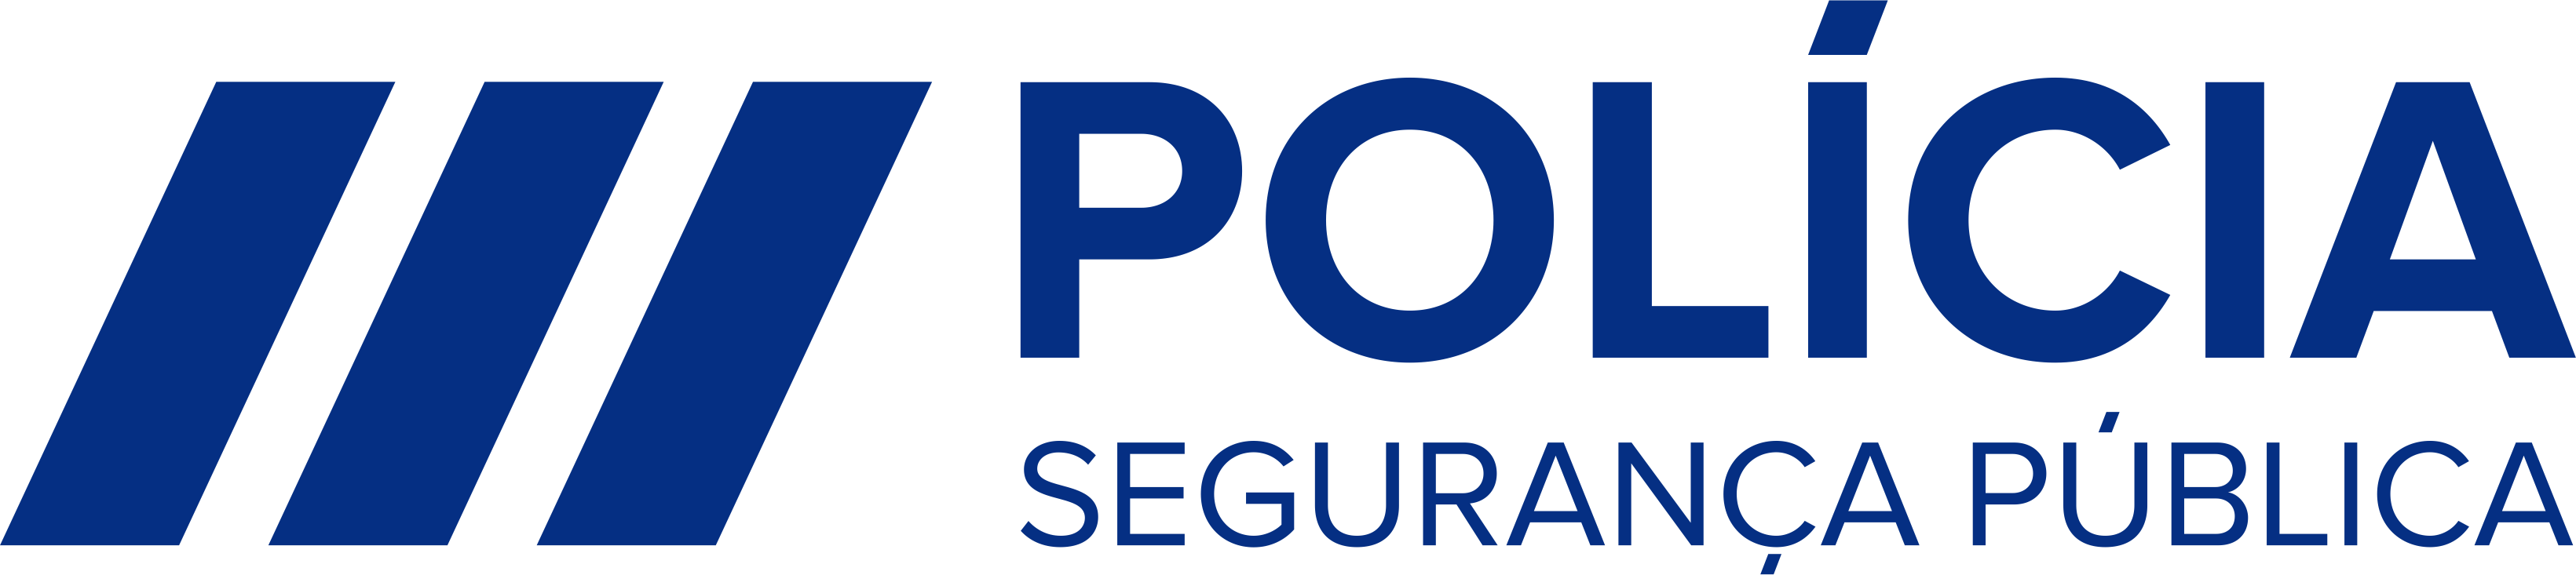 Logotipo Polícia de Segurança Pública - ePortugal.gov.pt